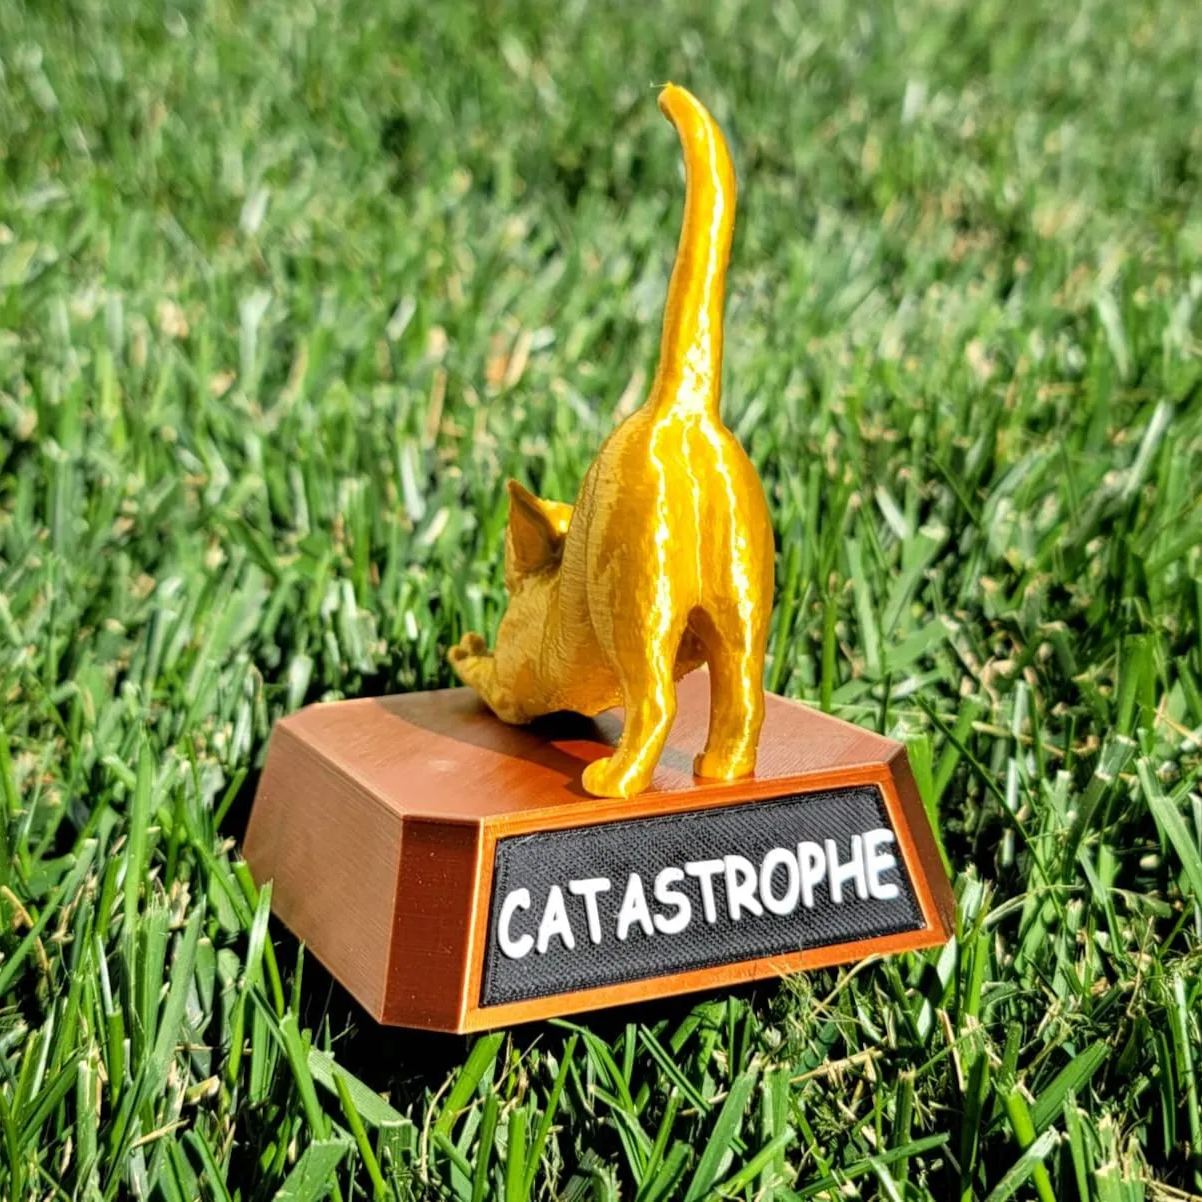 Catastrophe Cat Ass Trophy